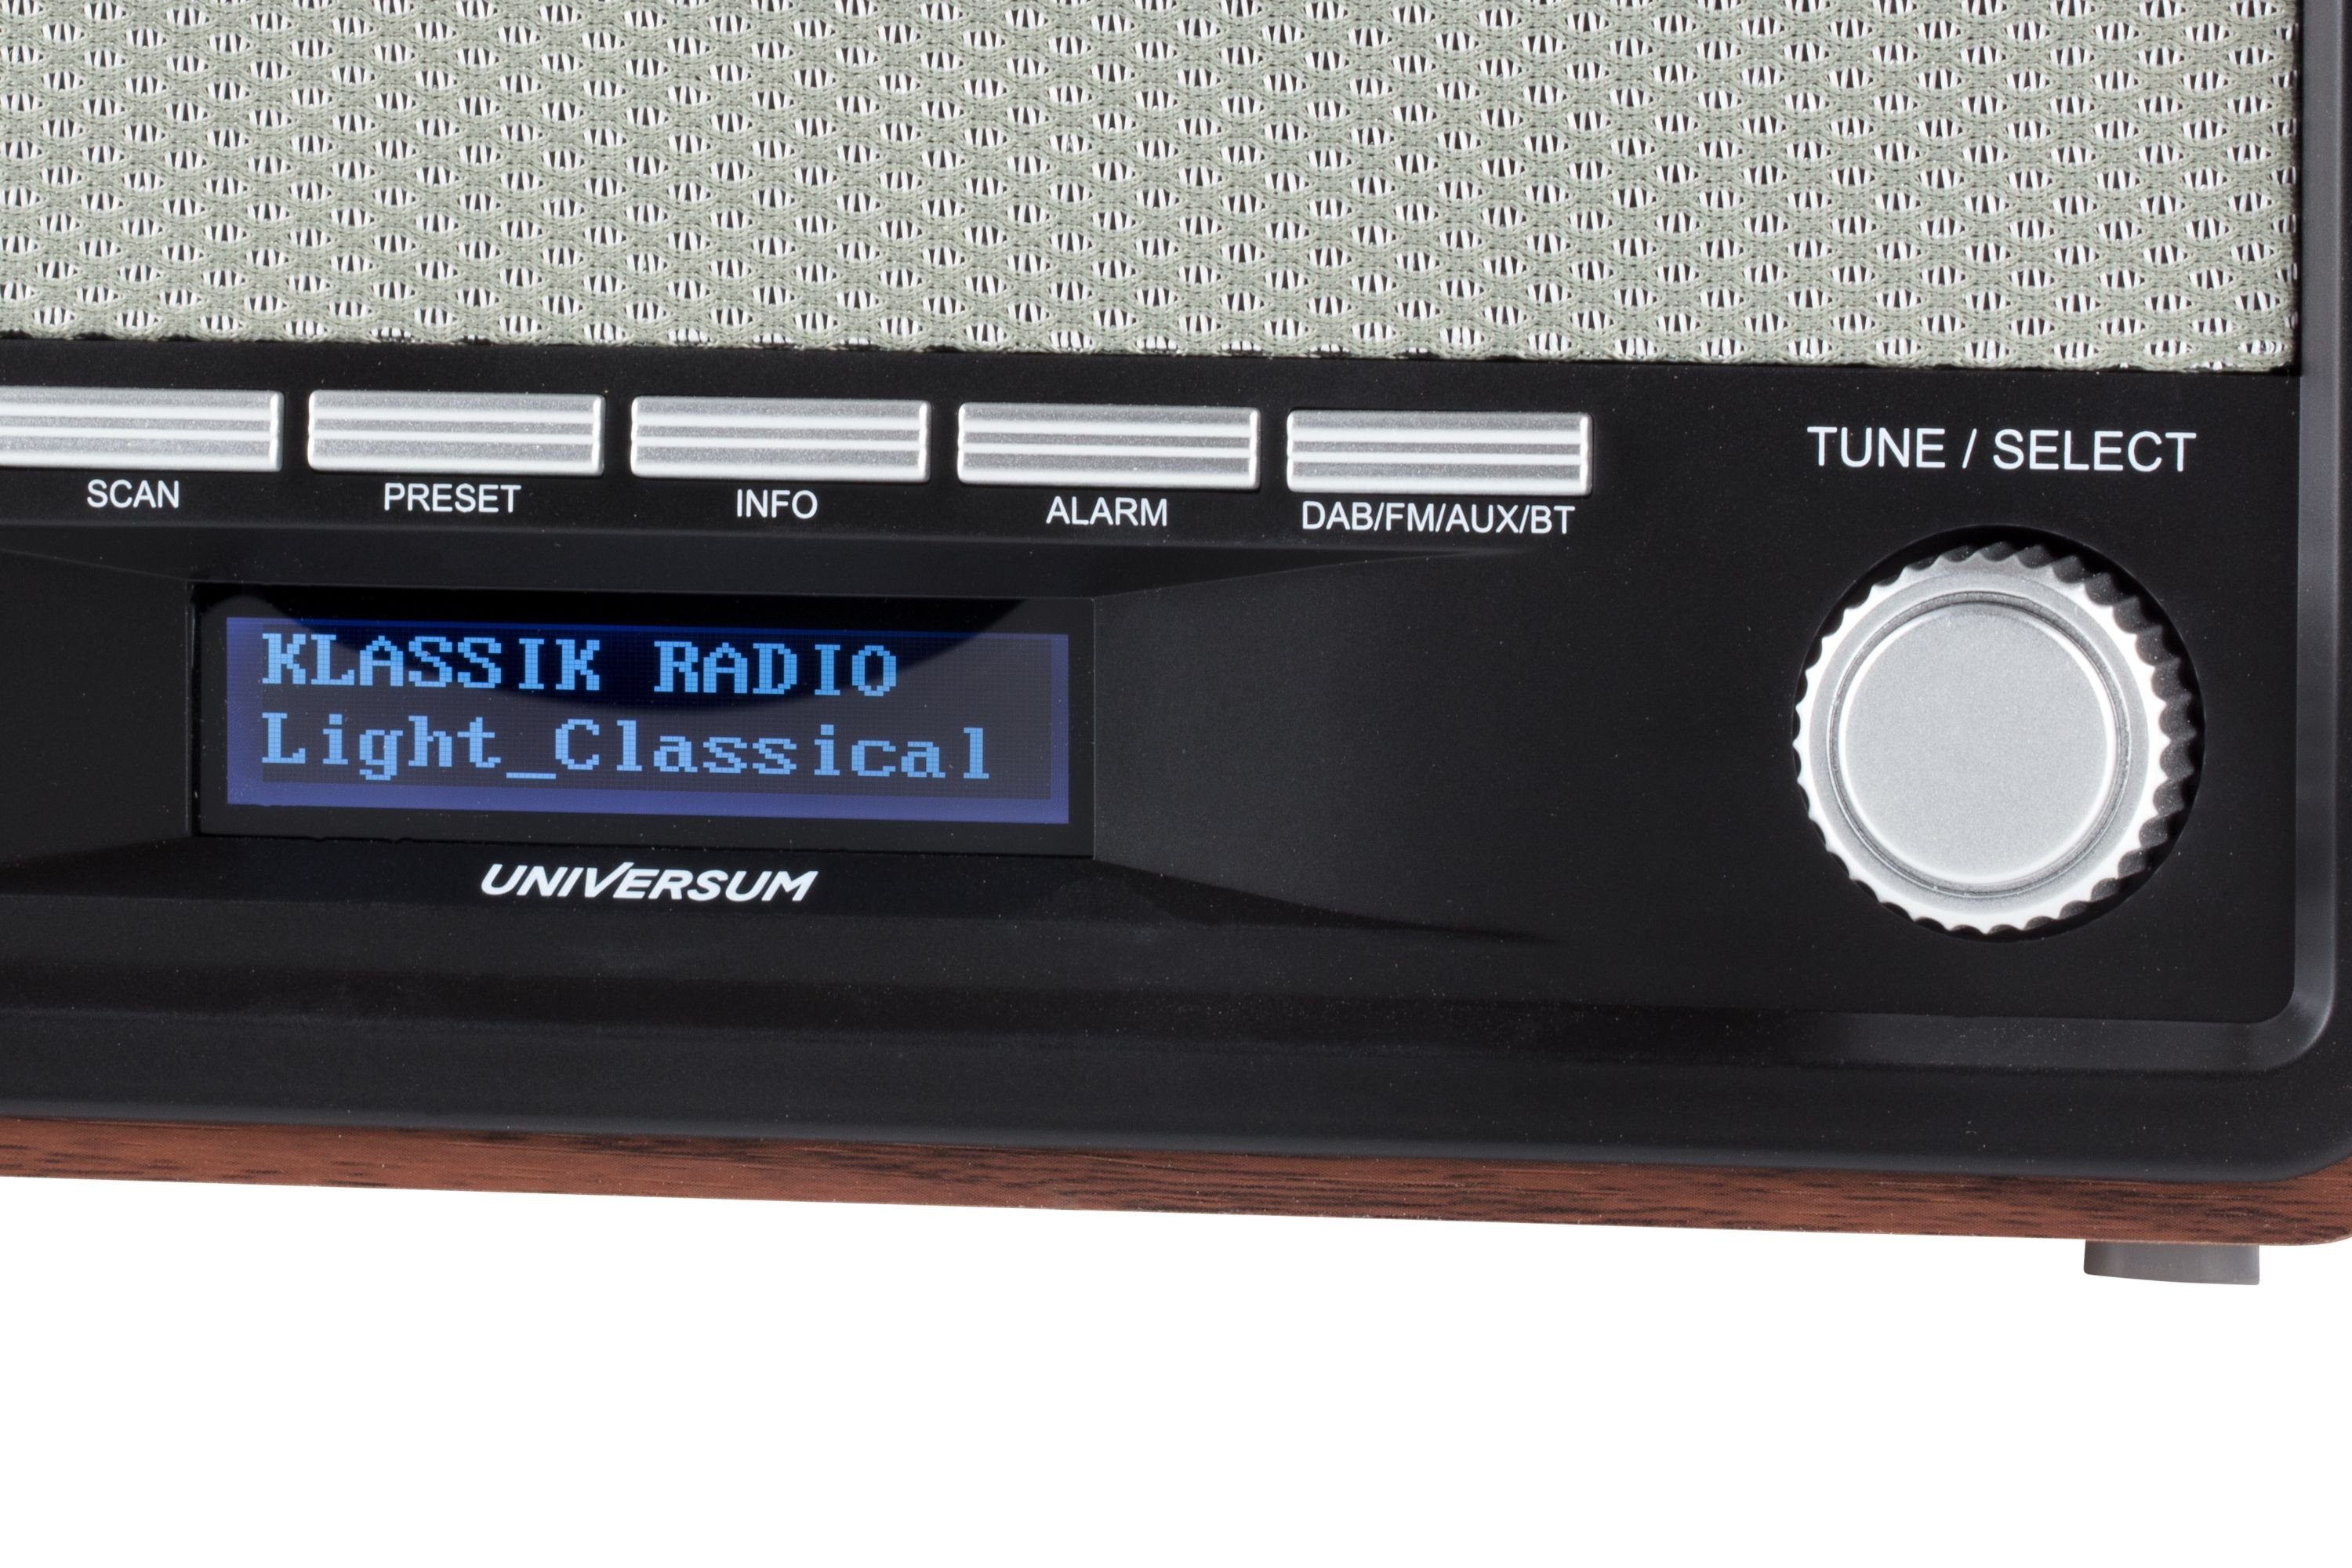 UNIVERSUM* DR 350-21 Digitalradio (DAB) AUX-IN und (Retro Digitalradio mit Weckfuntion) Holzgehäuse, Bluetooth